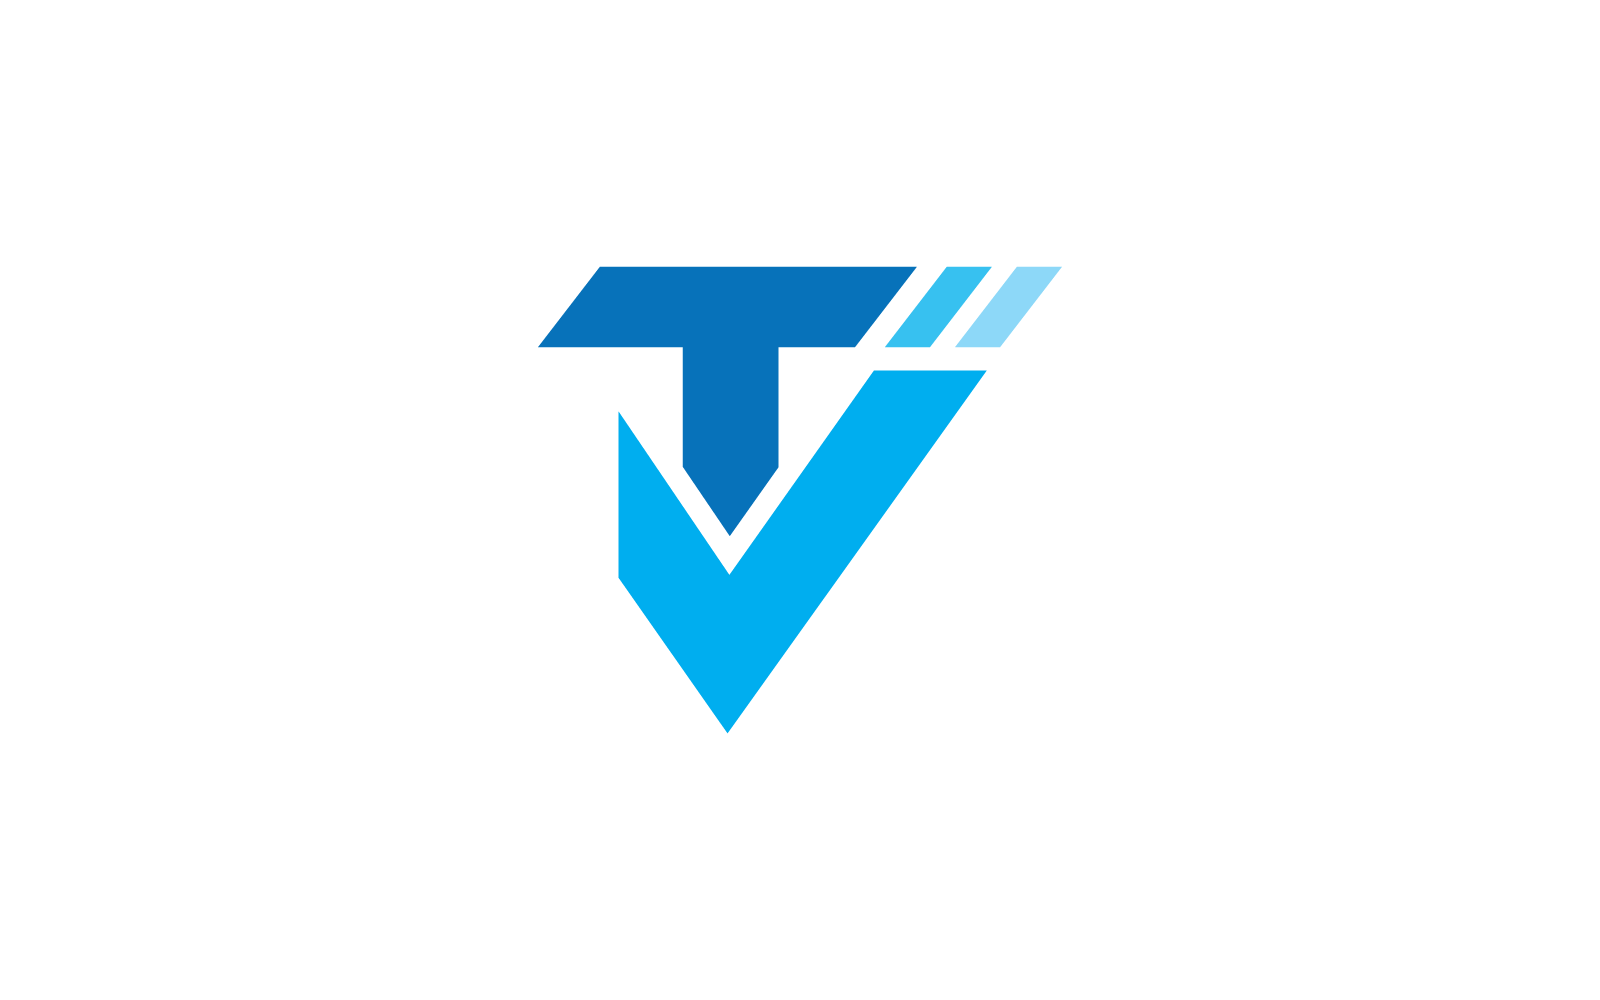 TV logo vector illustration design